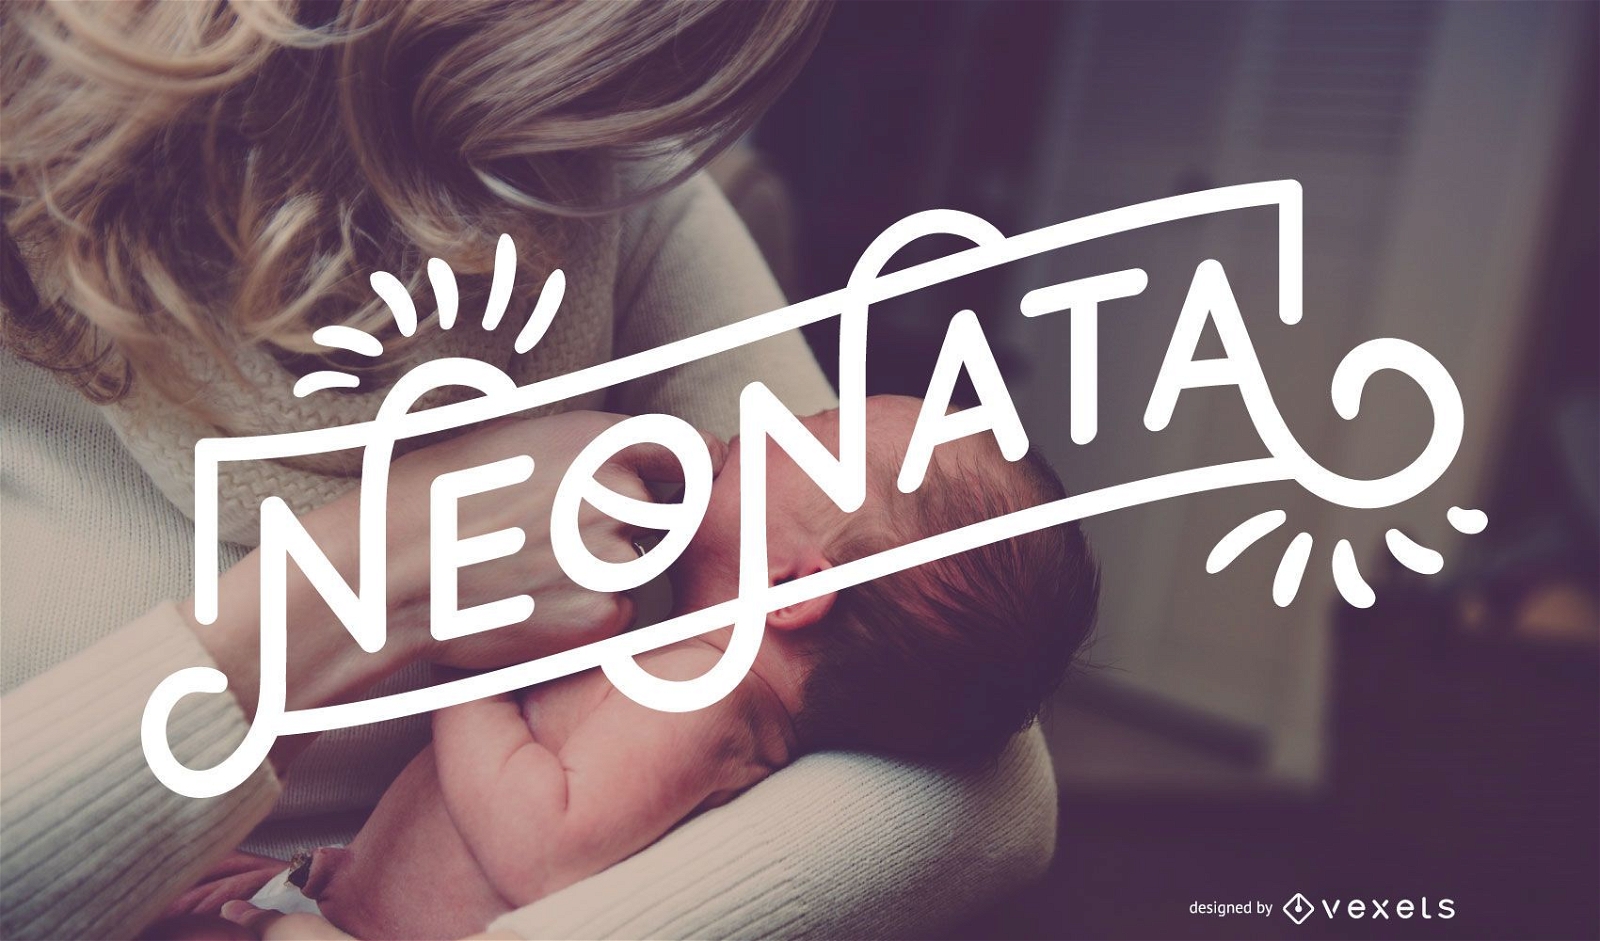 Neonata Baby Girl Italienisches Banner Design